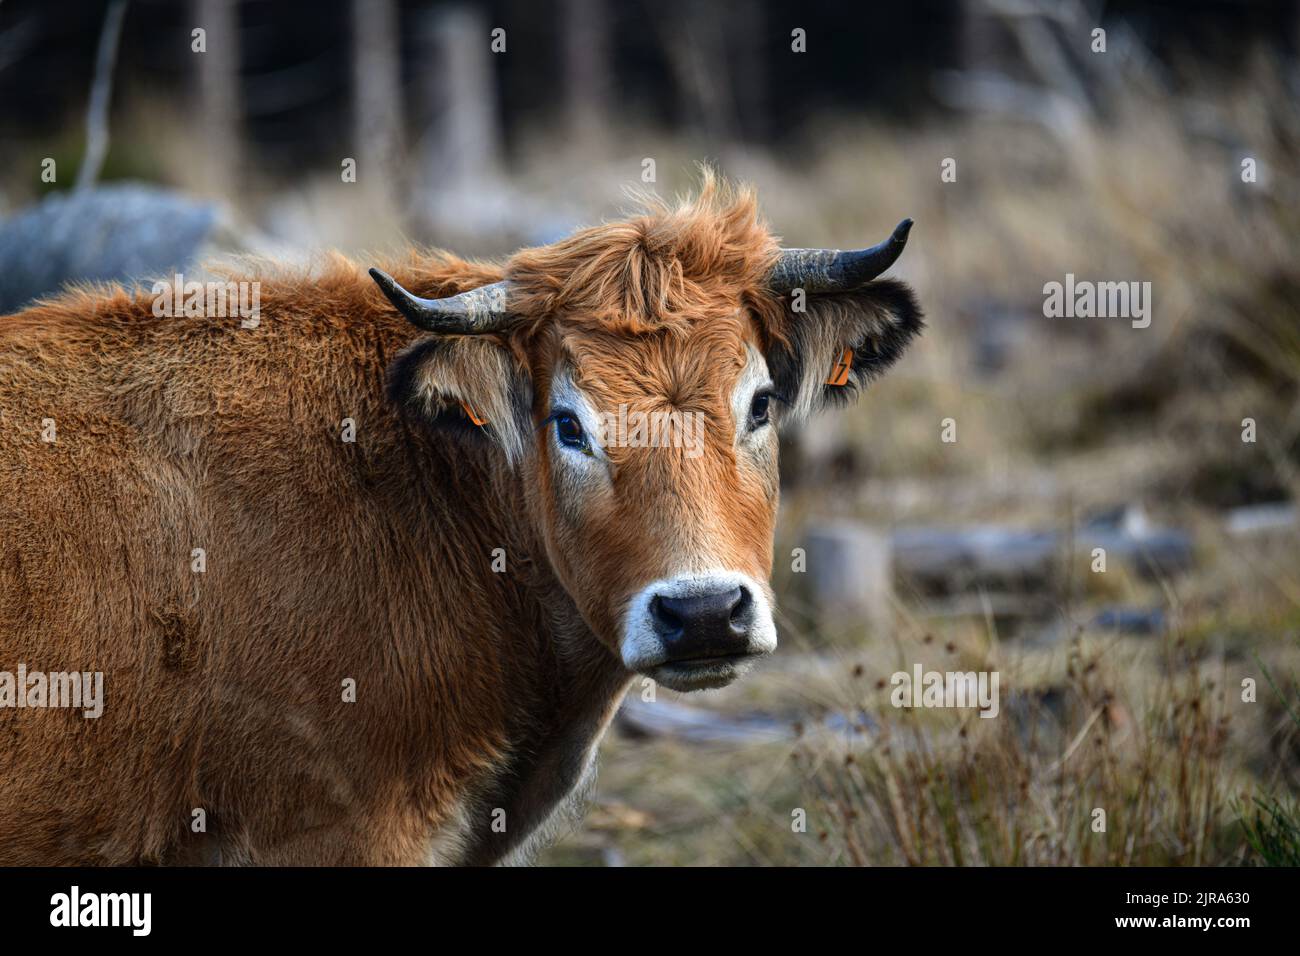 Dipartimento dell'alta Loira (Francia centro-meridionale): Vacca Aubrac in una sottobosco, vista di tre quarti Foto Stock